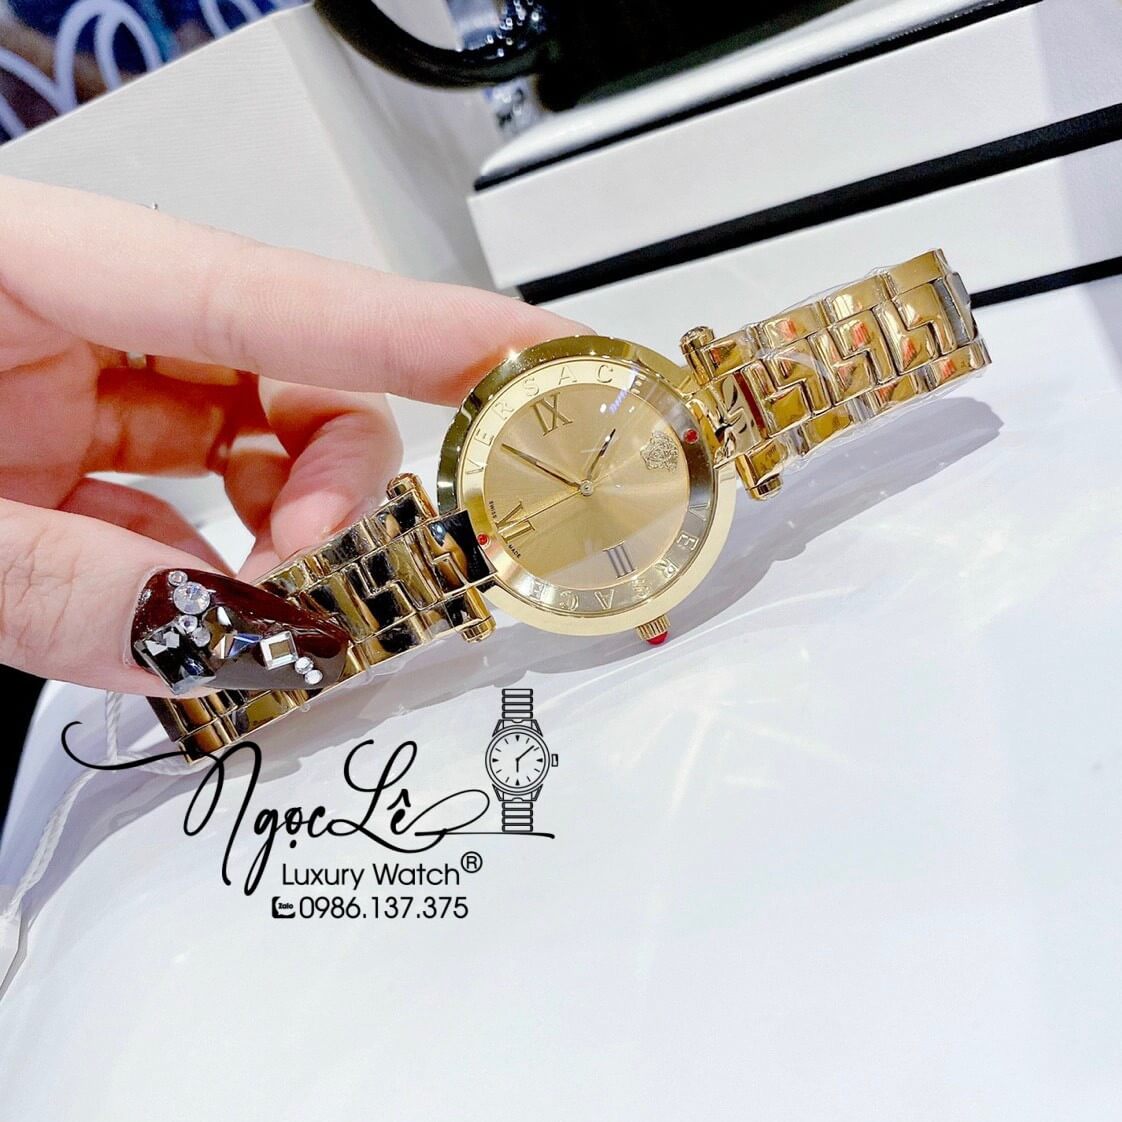 Đồng Hồ Nữ Versace Revive Dây Kim Loại Vàng Mặt Vàng Size 35mm Máy Thụy Sỹ